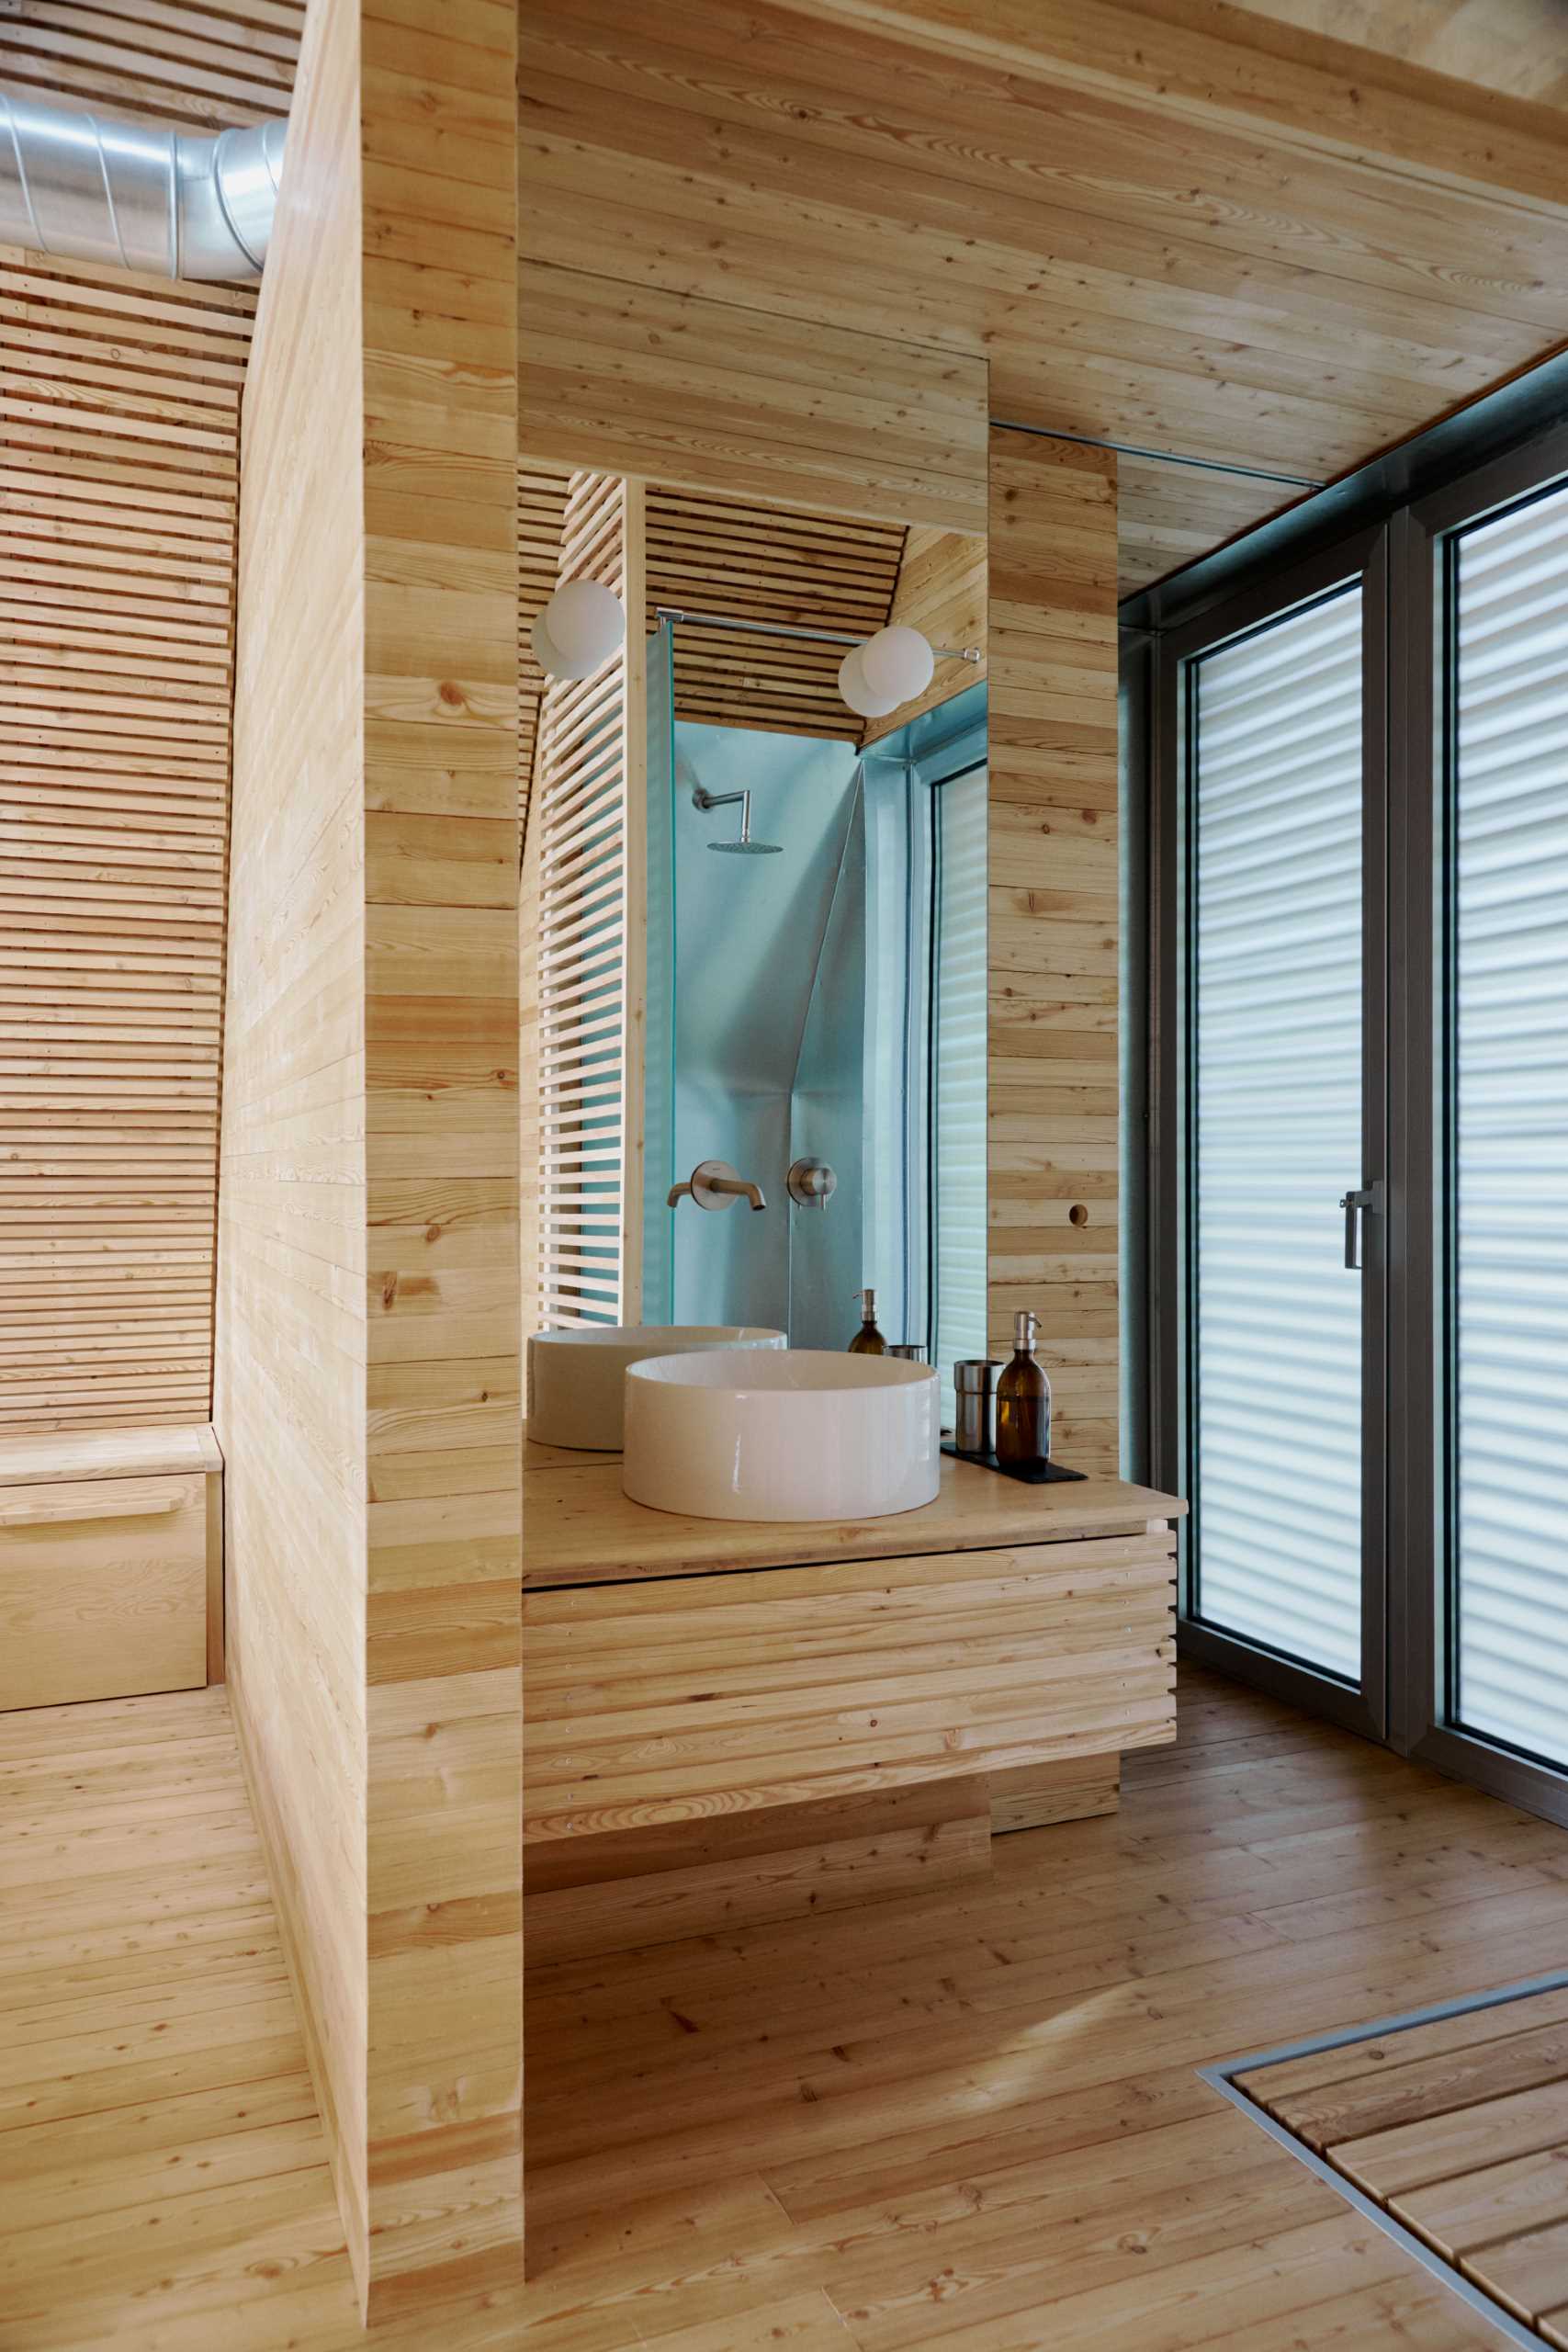 حداقل حمام ها شامل یک روشویی چوبی ساده با یک آینه بلند و دوش می شود.